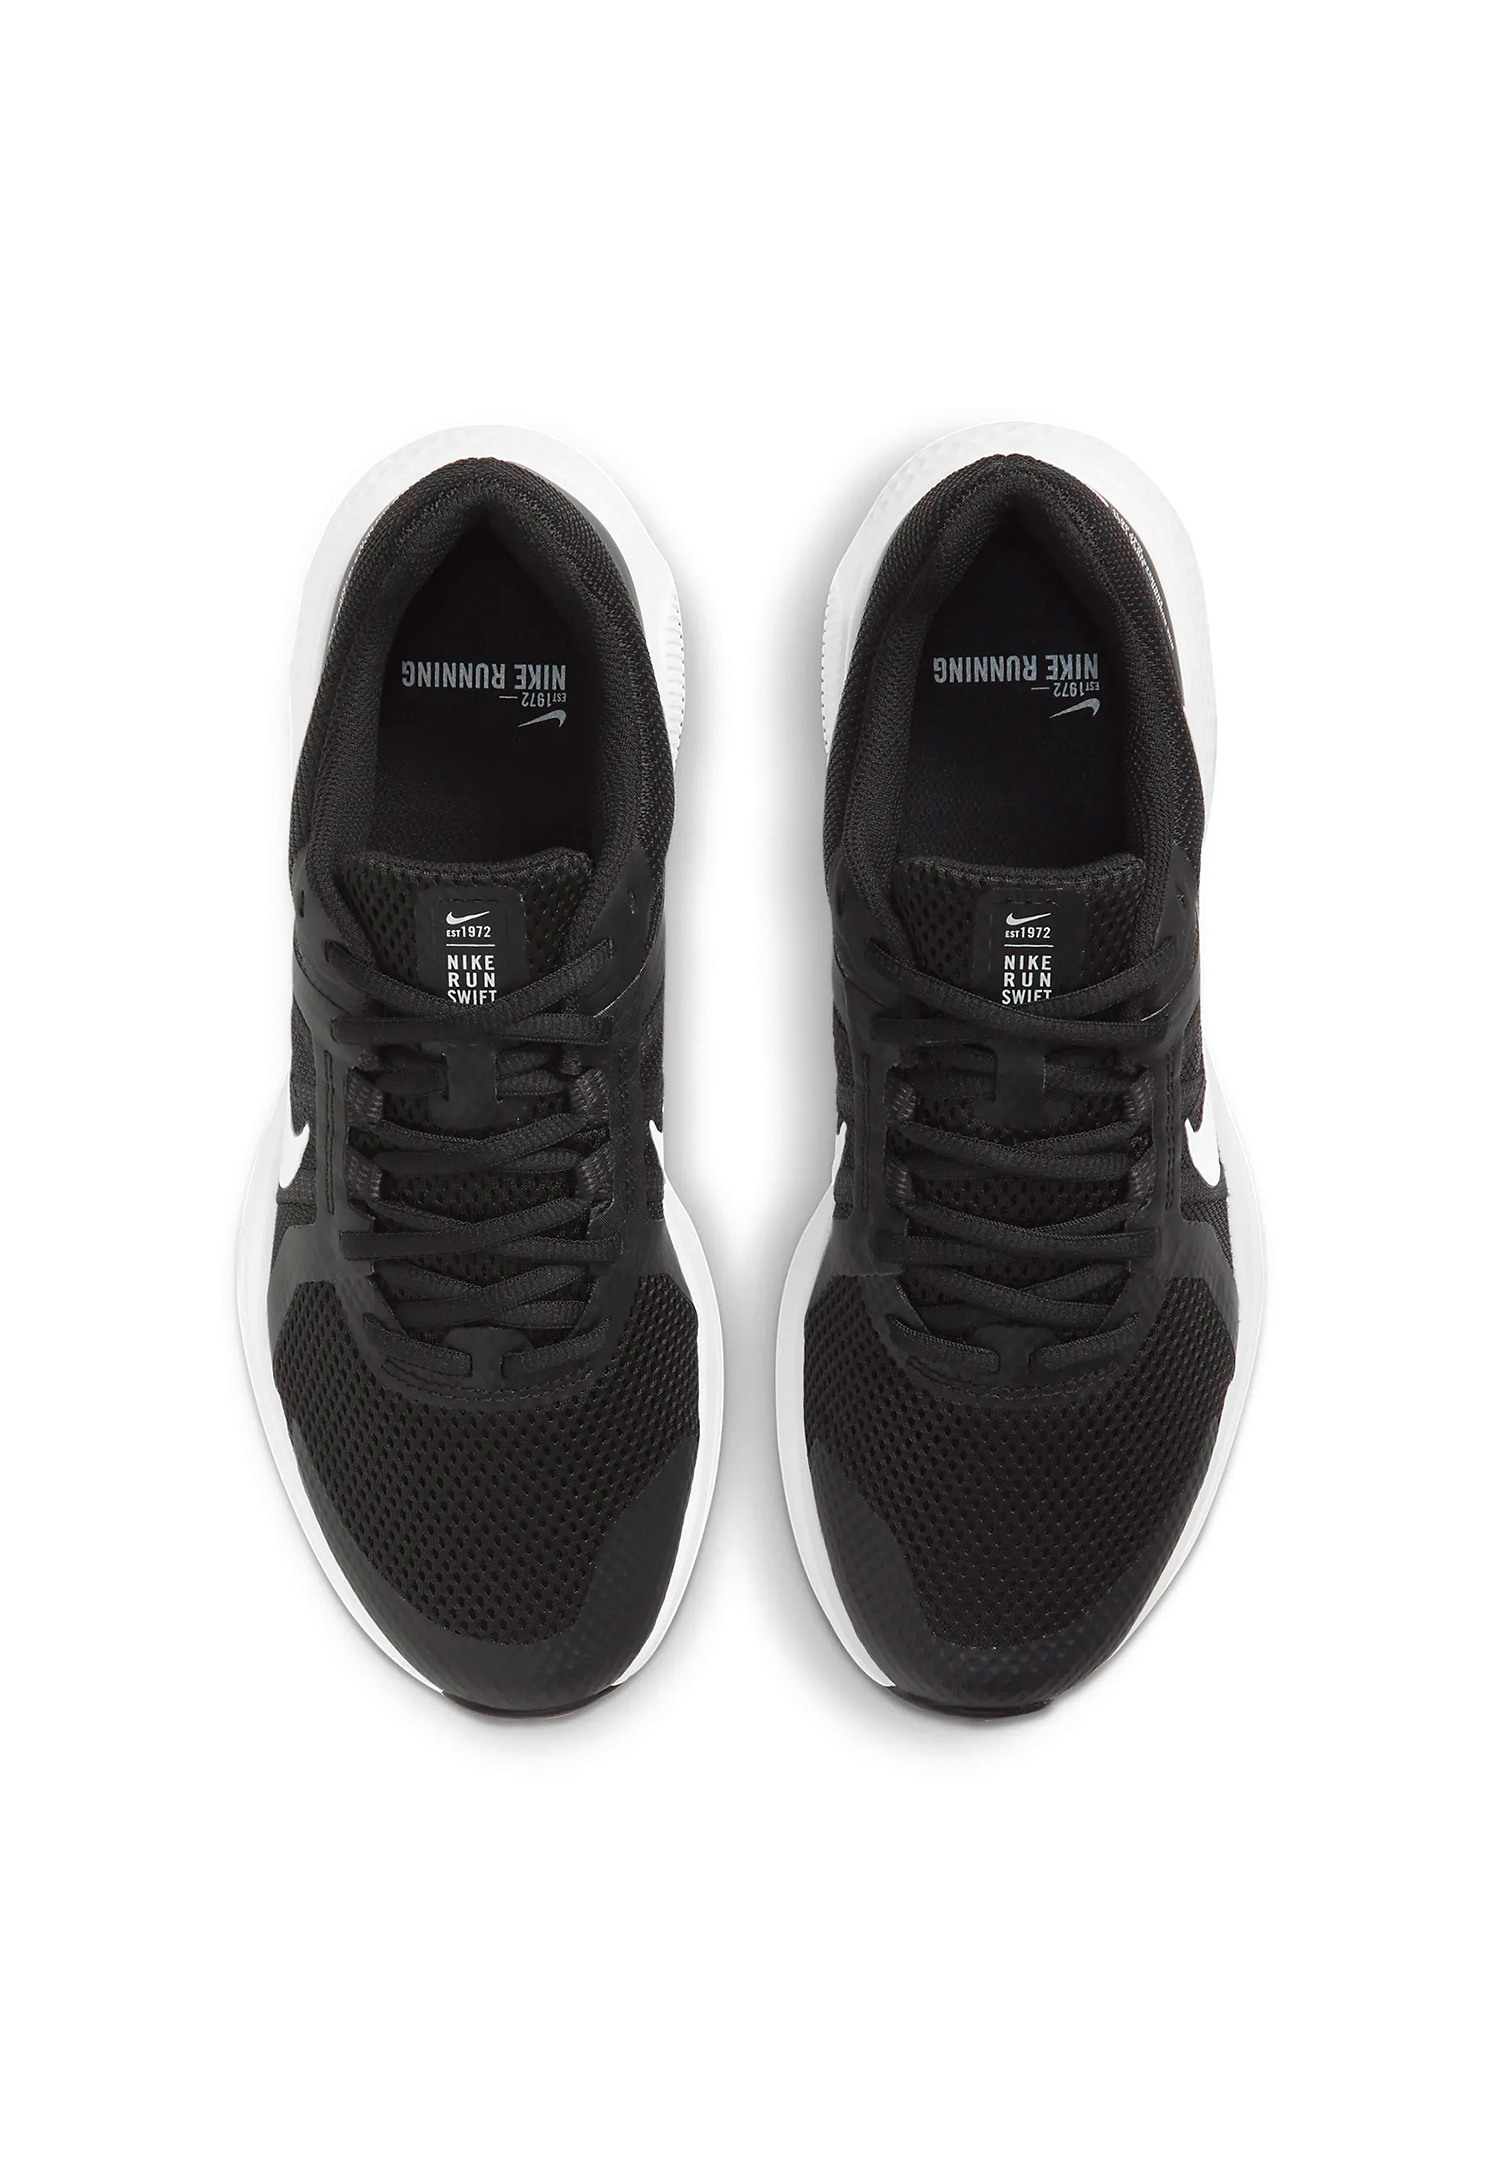 Nike RUN SWIFT 2 Laufschuhe Herren MEN Sneaker Sportschuhe Run CU3517 004 schwarz